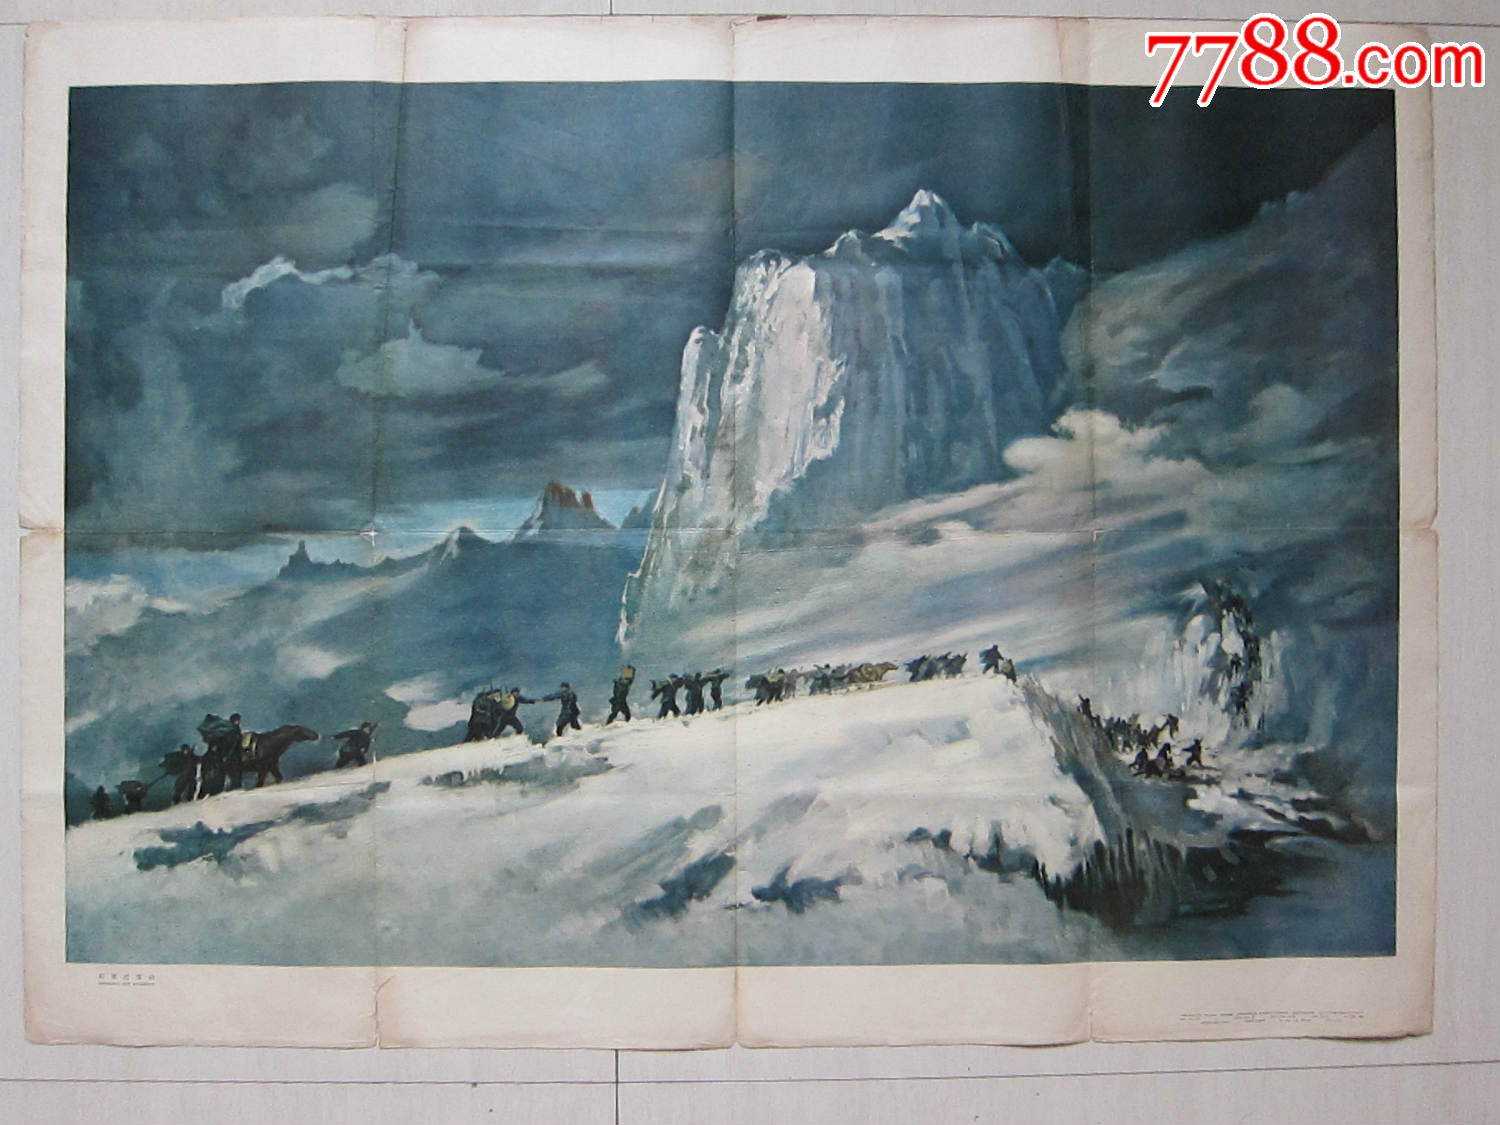 全开——————红军过雪山(大师:庞卡作),年画/宣传画,绘画稿印刷